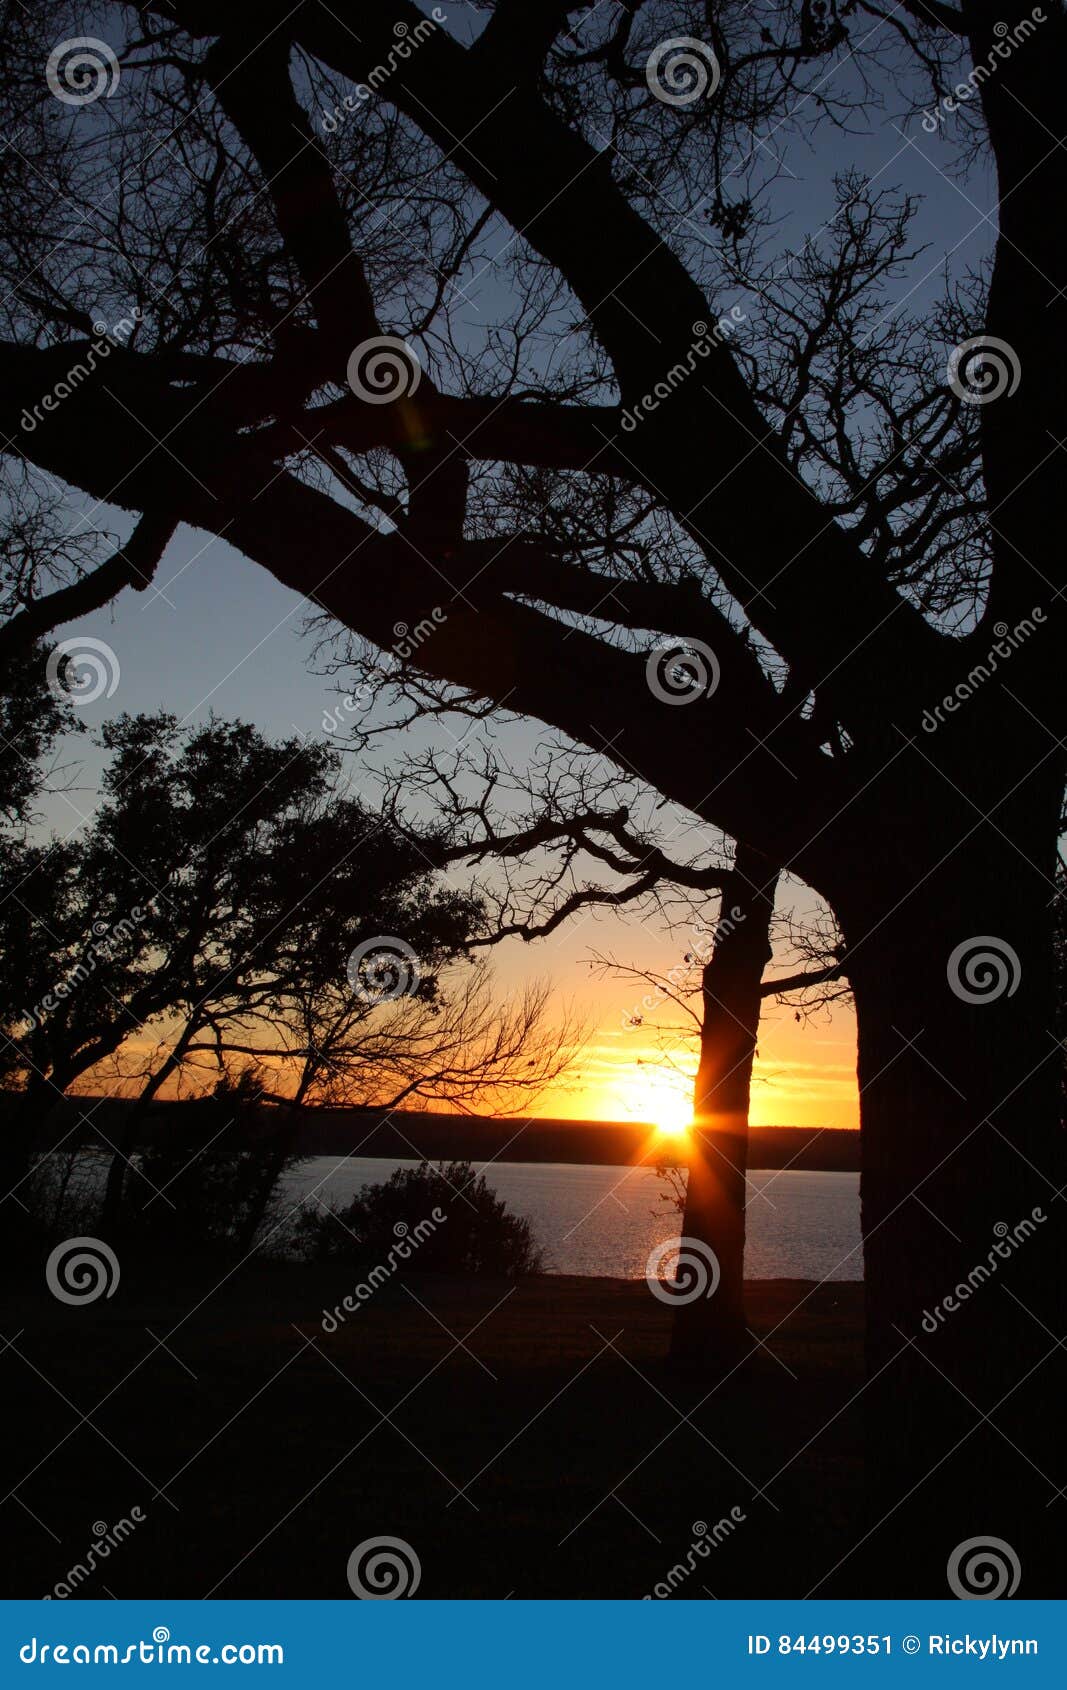 Lake Worth Setting Sun stock image. Image of sunset, land - 84499351